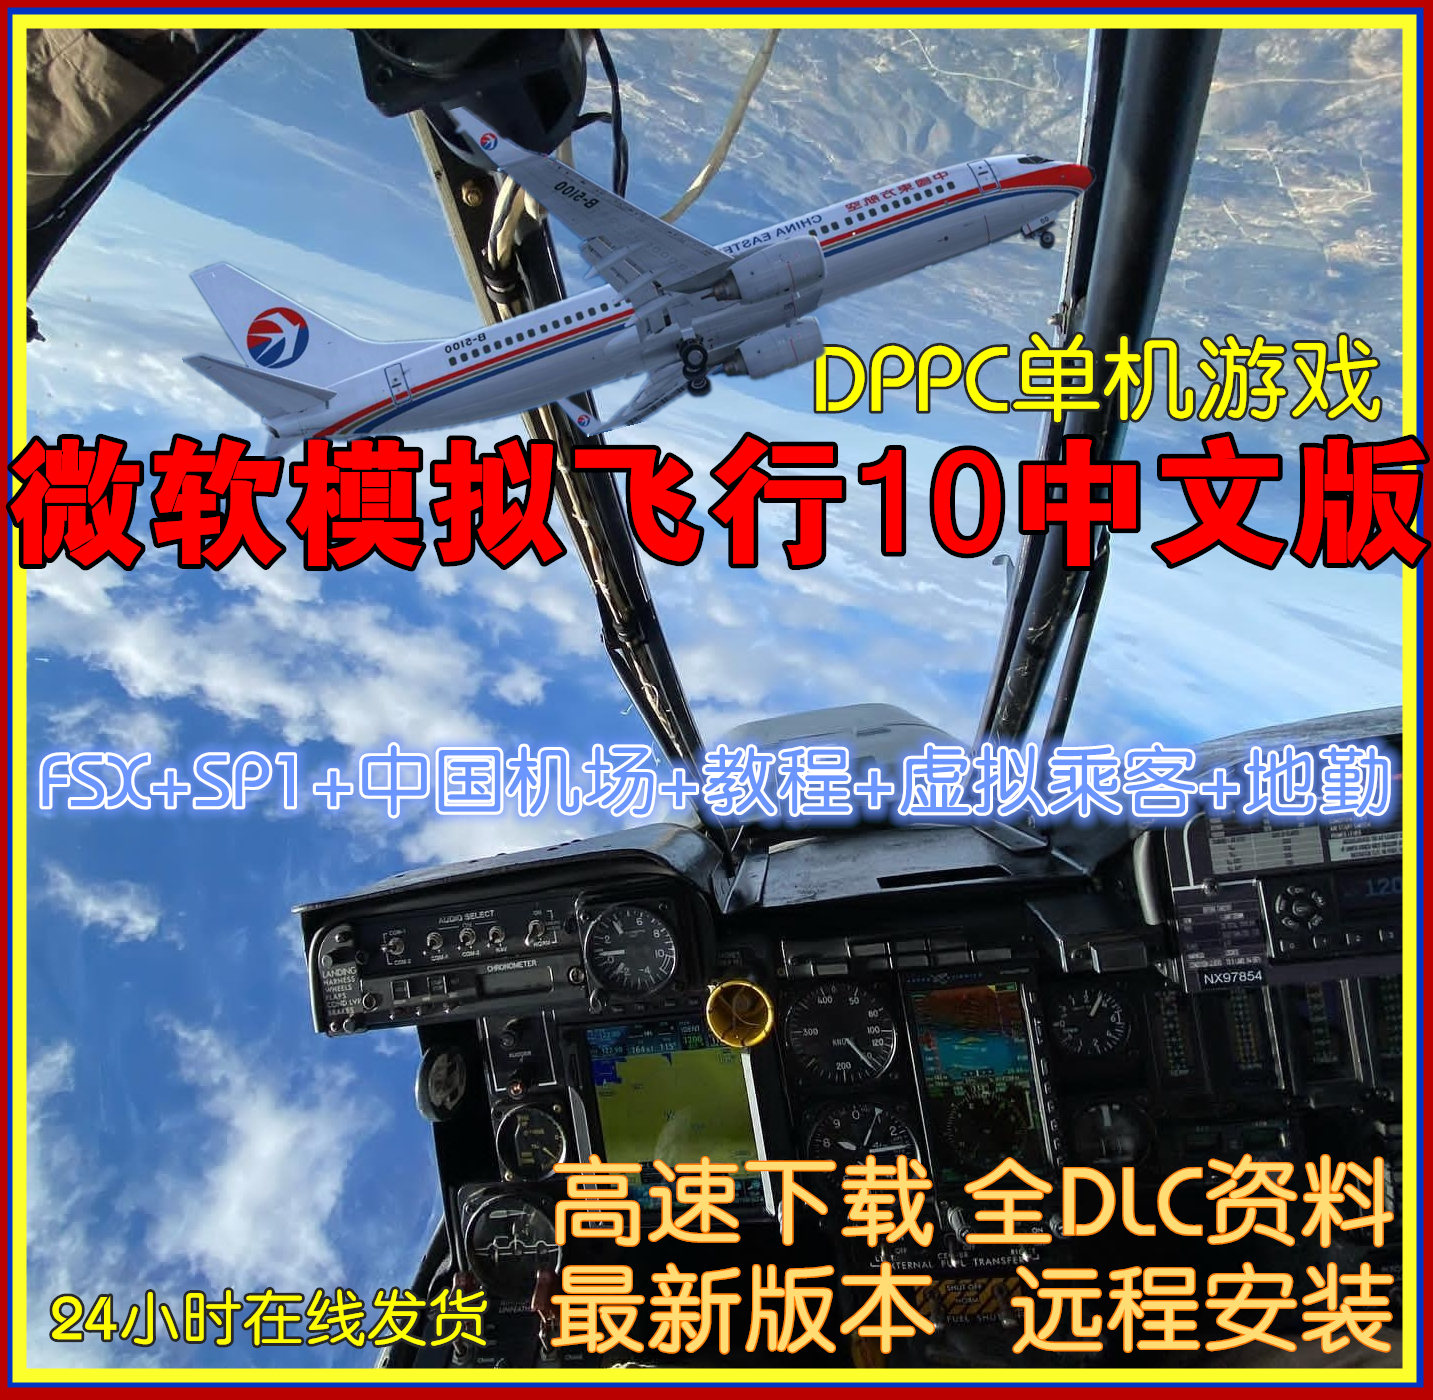 PC微软模拟飞行10中文版 FSX+SP1送中国机场教程虚拟乘客地勤单机 电玩/配件/游戏/攻略 STEAM 原图主图